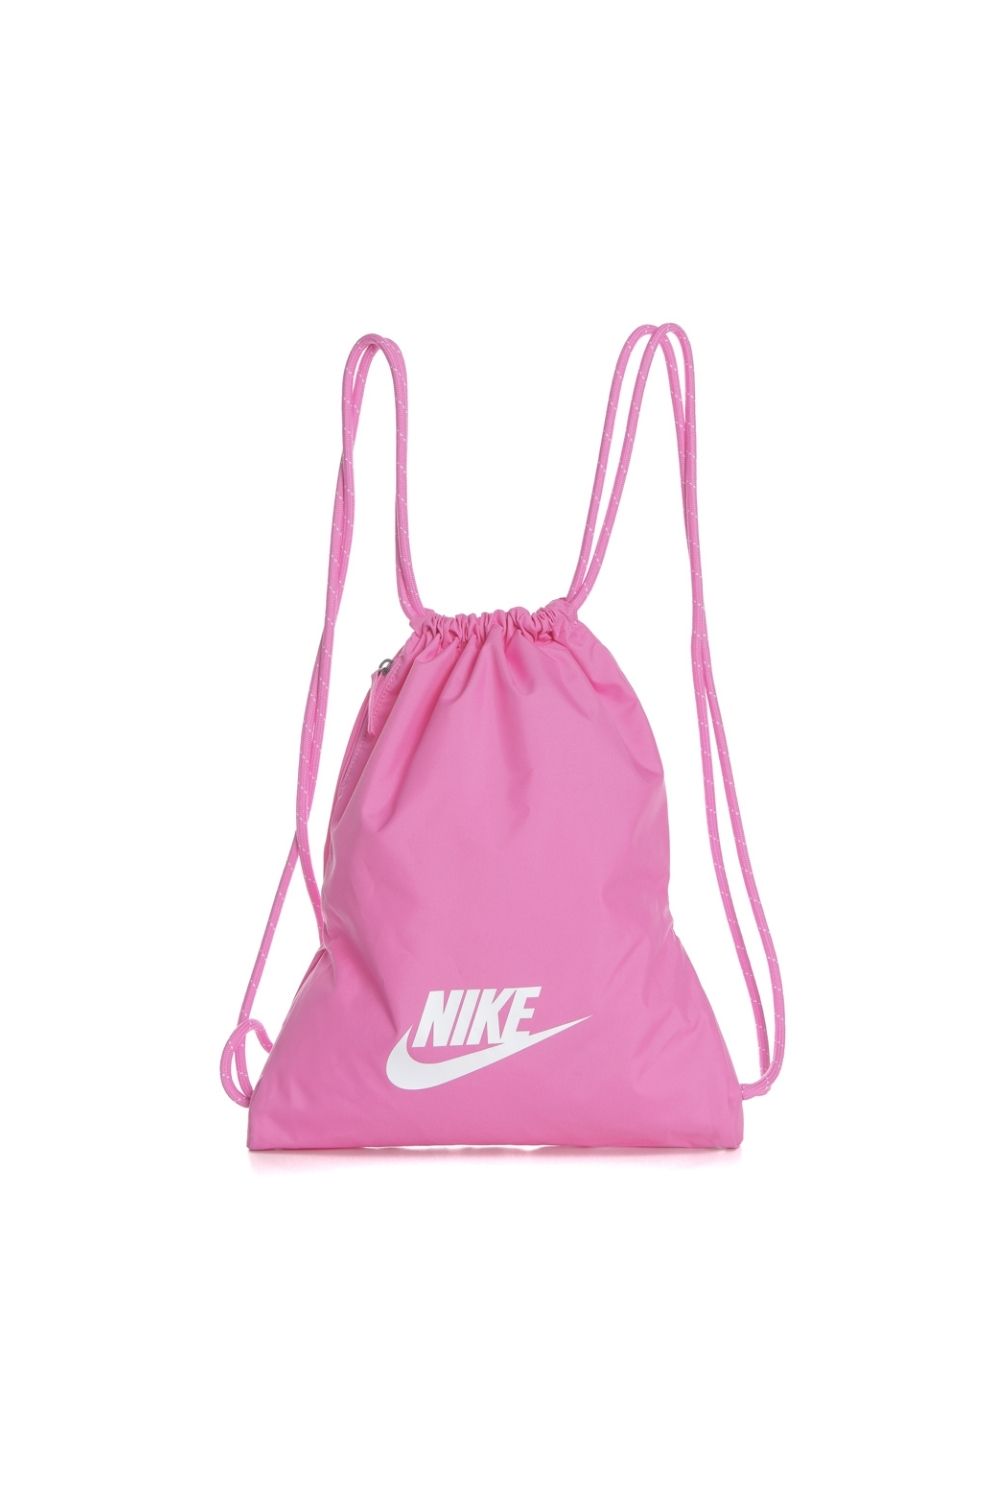 NIKE - Unisex τσάντα γυμναστηρίου NK HERITAGE GMSK - 2.0 φούξια Γυναικεία/Αξεσουάρ/Τσάντες-Σακίδια/Αθλητικές